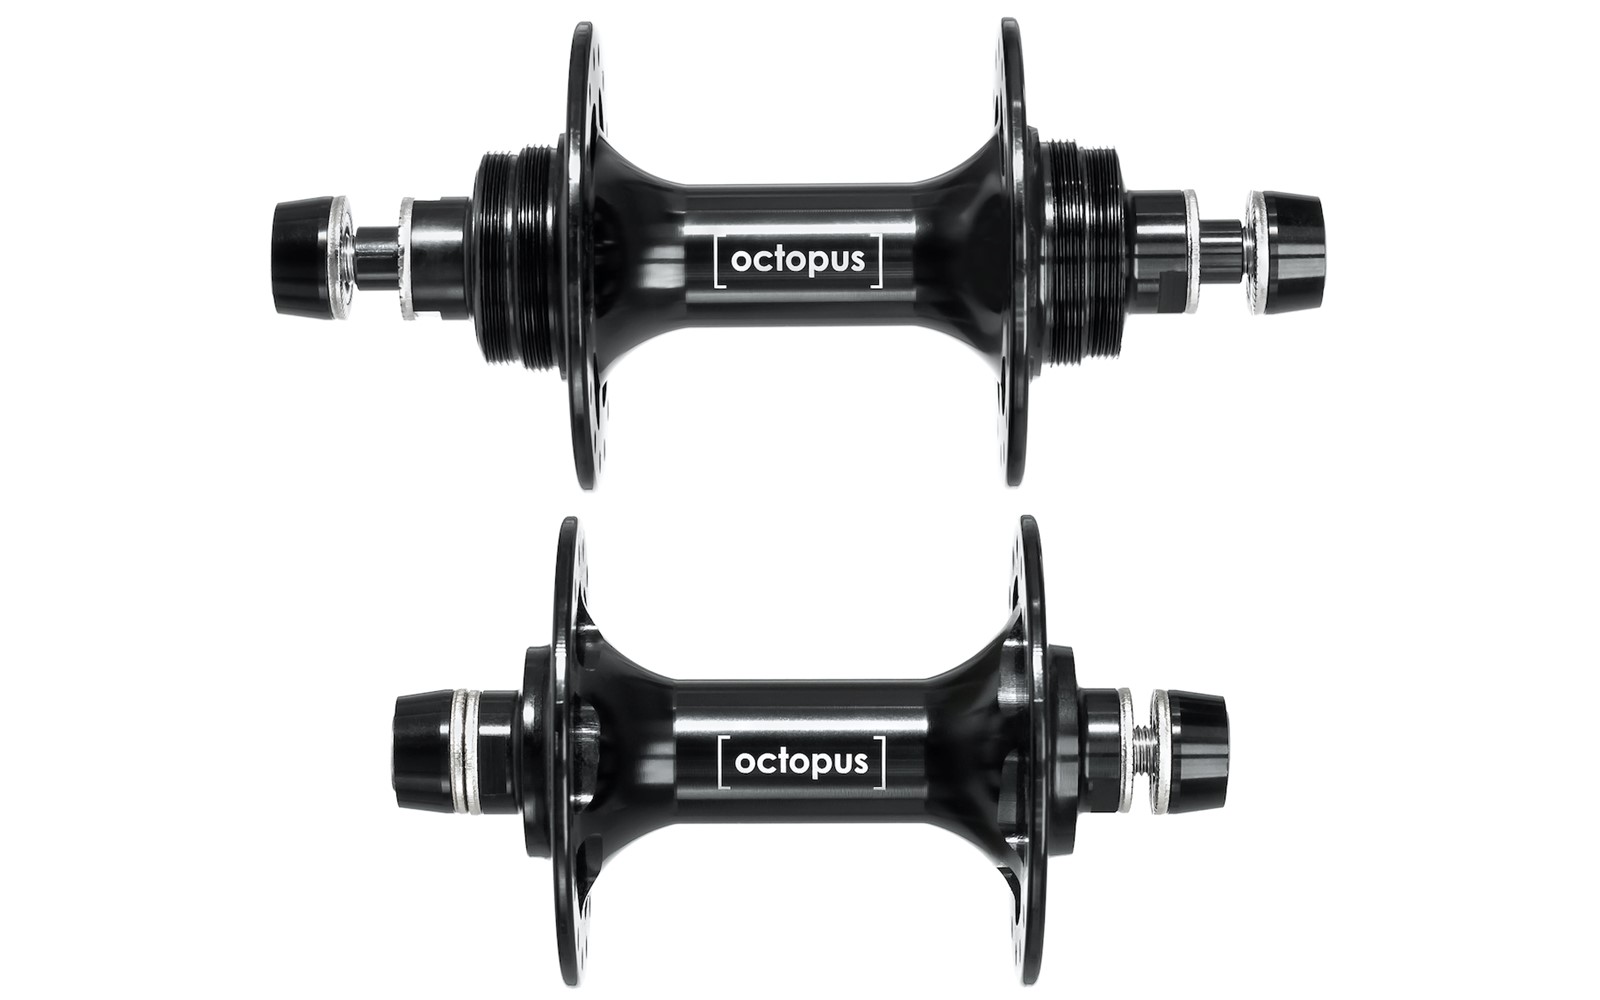 Комплект втулок Octopus Pro Lite за 204,99 руб. в магазине городских велосипедов City Bikes в Минске.